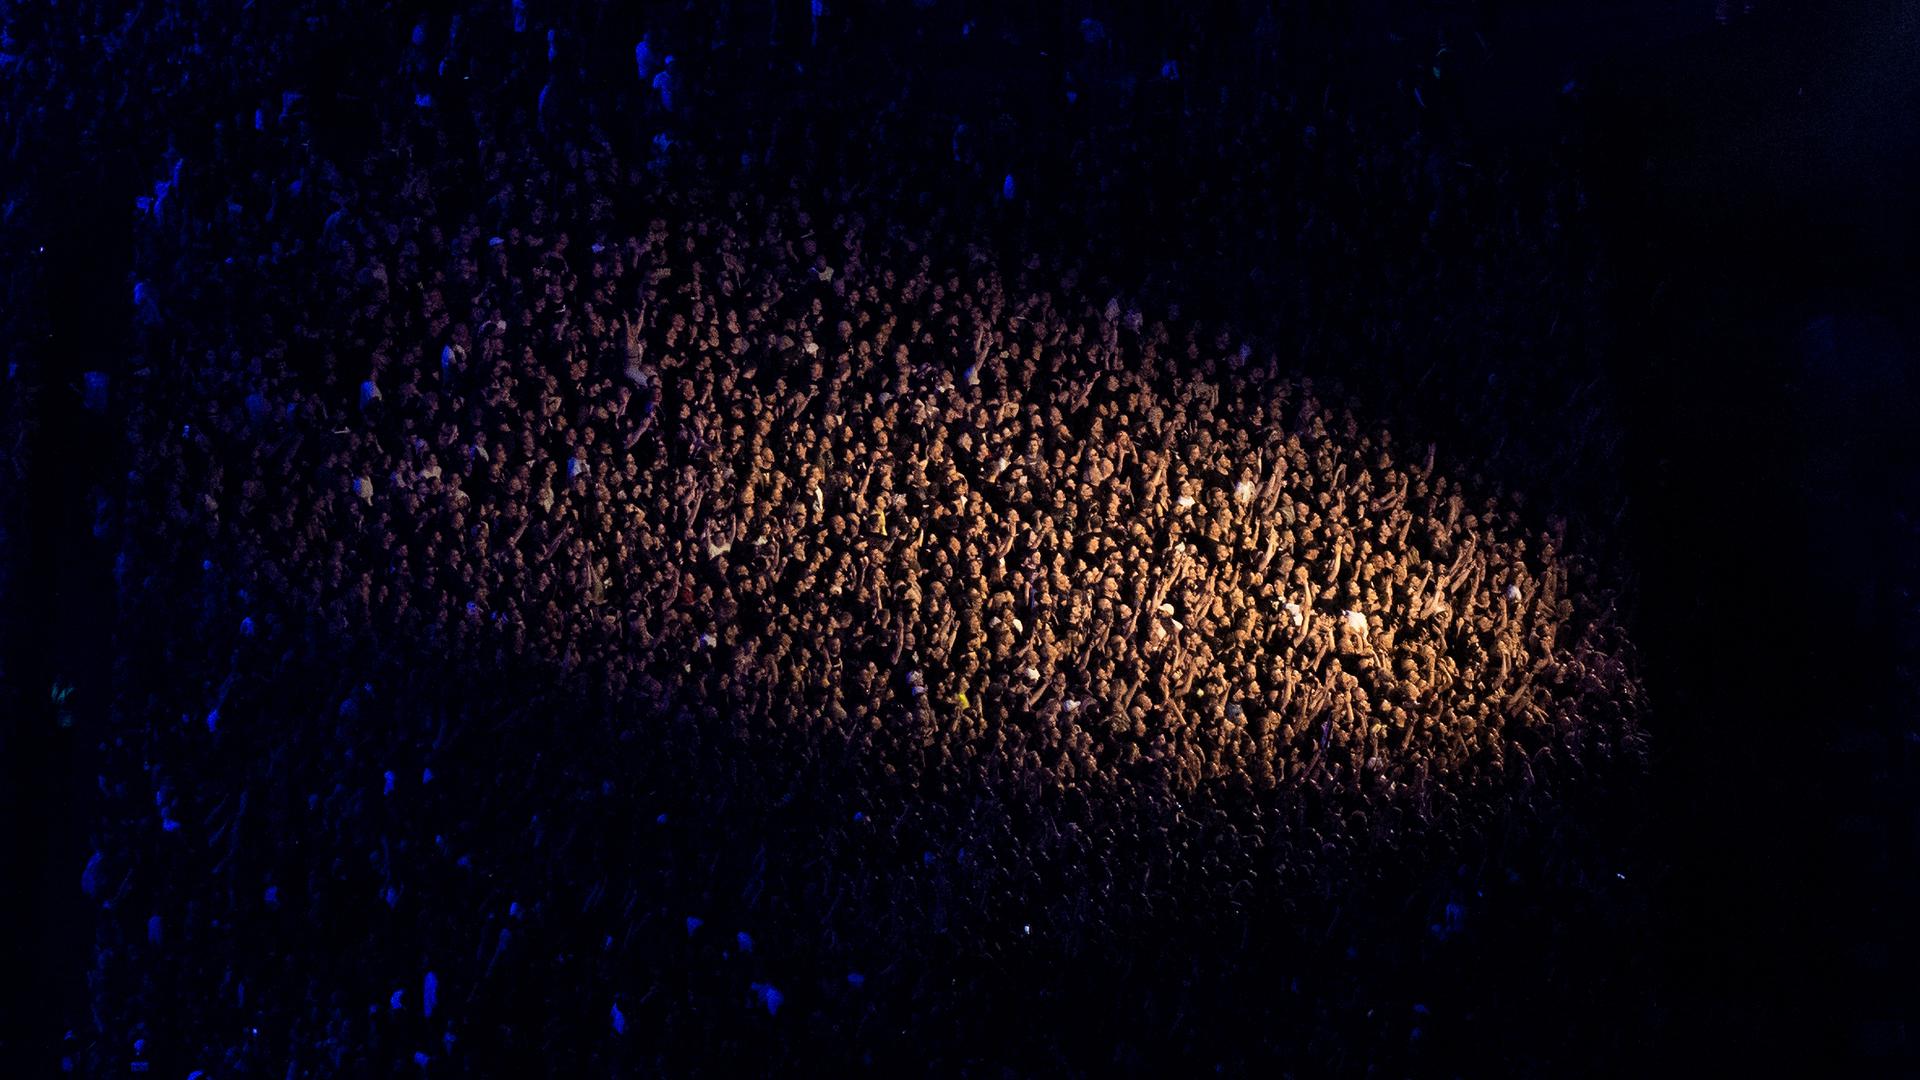 Tausende Zuschauer verfolgen das Konzert der Band Rammstein im Olympiastadion. Rammstein spielen in München am 07. + 08. + 10. + 11.06.2023 insgesamt vier Konzerte im Rahmen ihrer Europa Stadion Tour. +++ dpa-Bildfunk +++